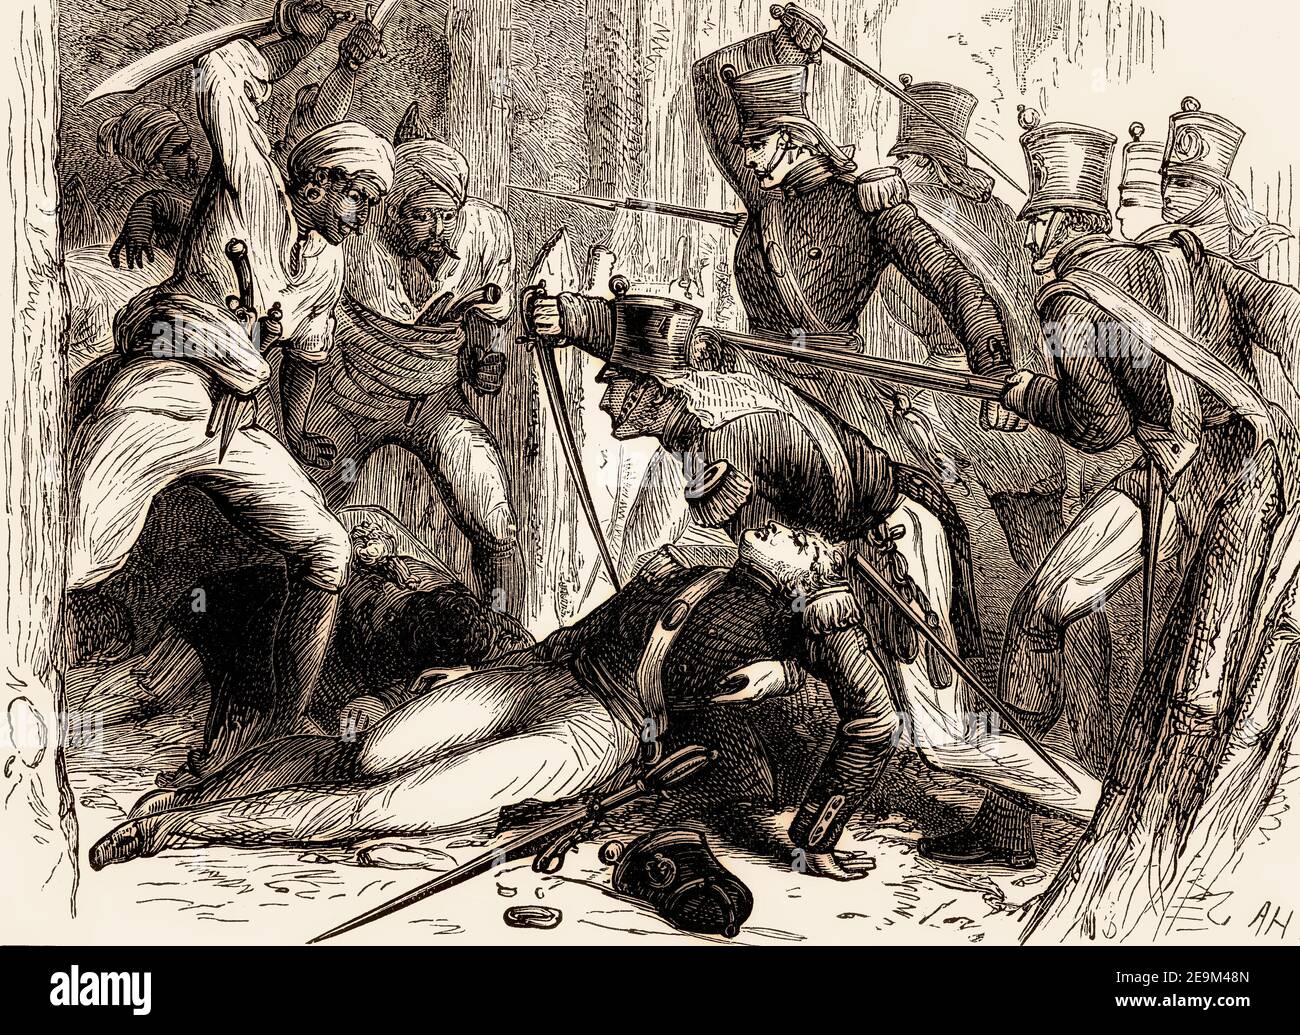 Rettung von Oberstleutnant Macgregor Murray, Schlacht von Talneir, 3. Anglo-Maratha-Krieg, Indien, 1818, vor britischen Schlachten auf Land und Meer, von James Grant Stockfoto